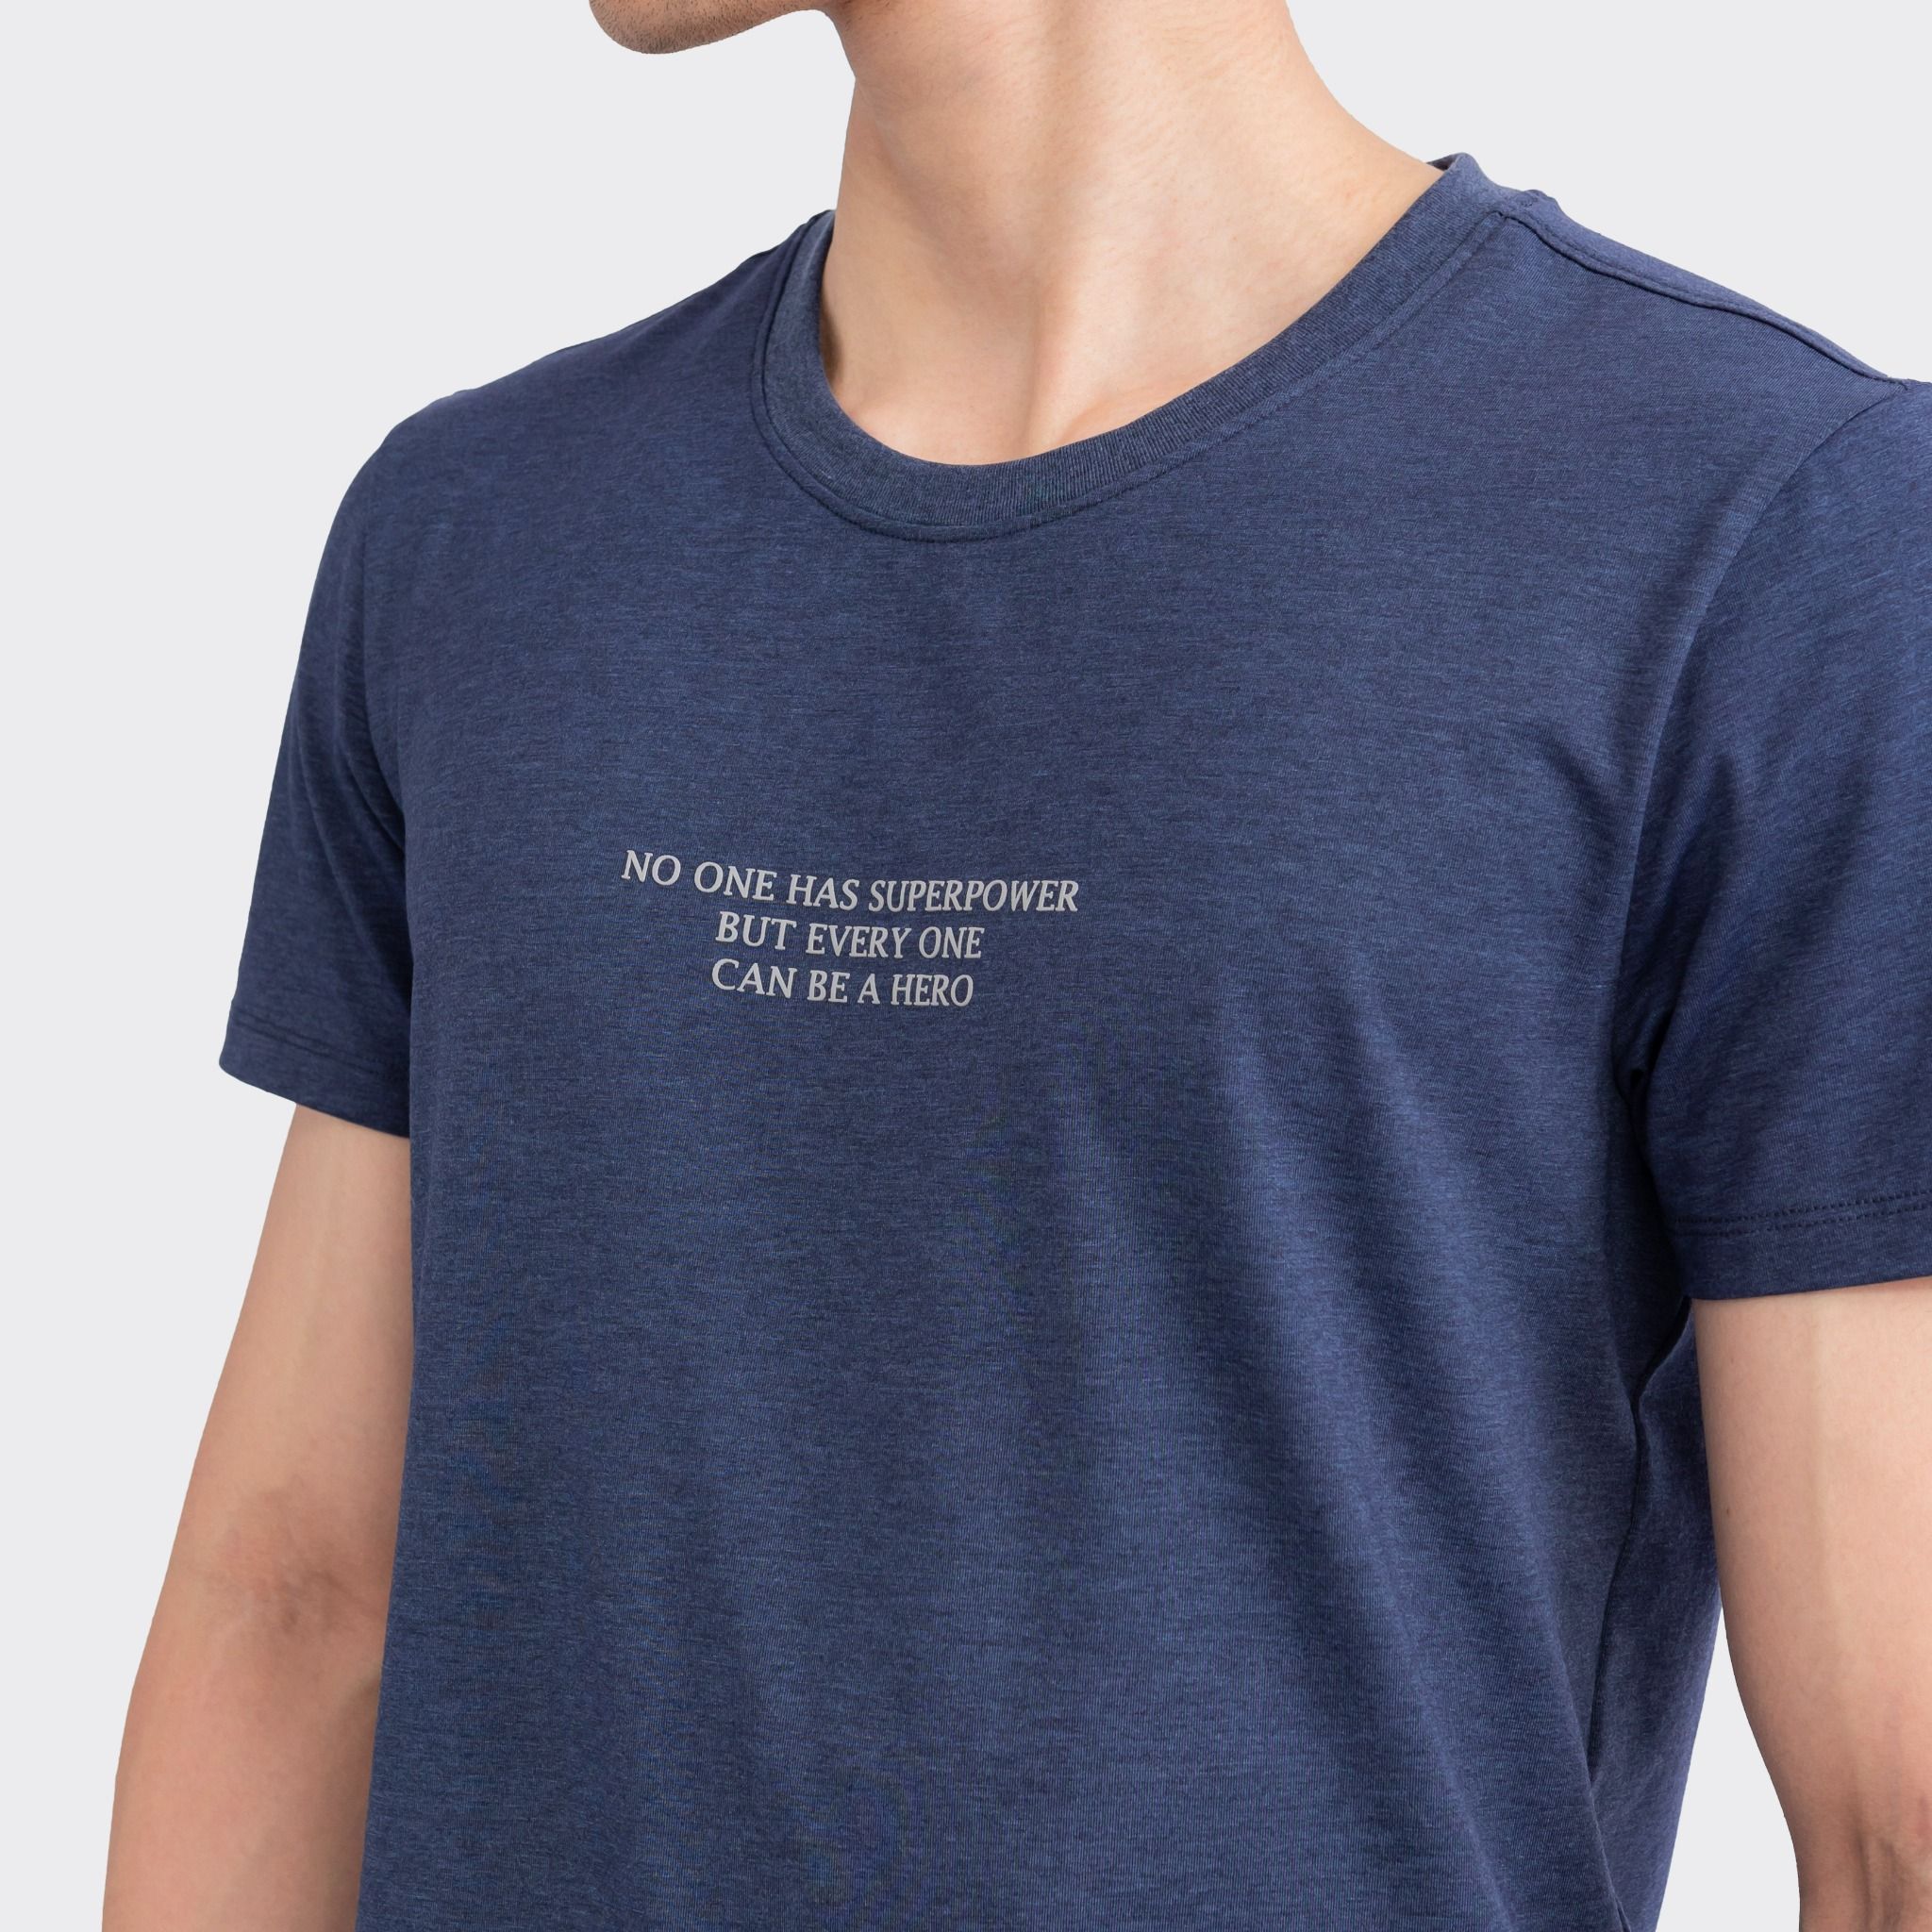  Áo T-shirt nam ngắn tay Insidemen ITS006S3 